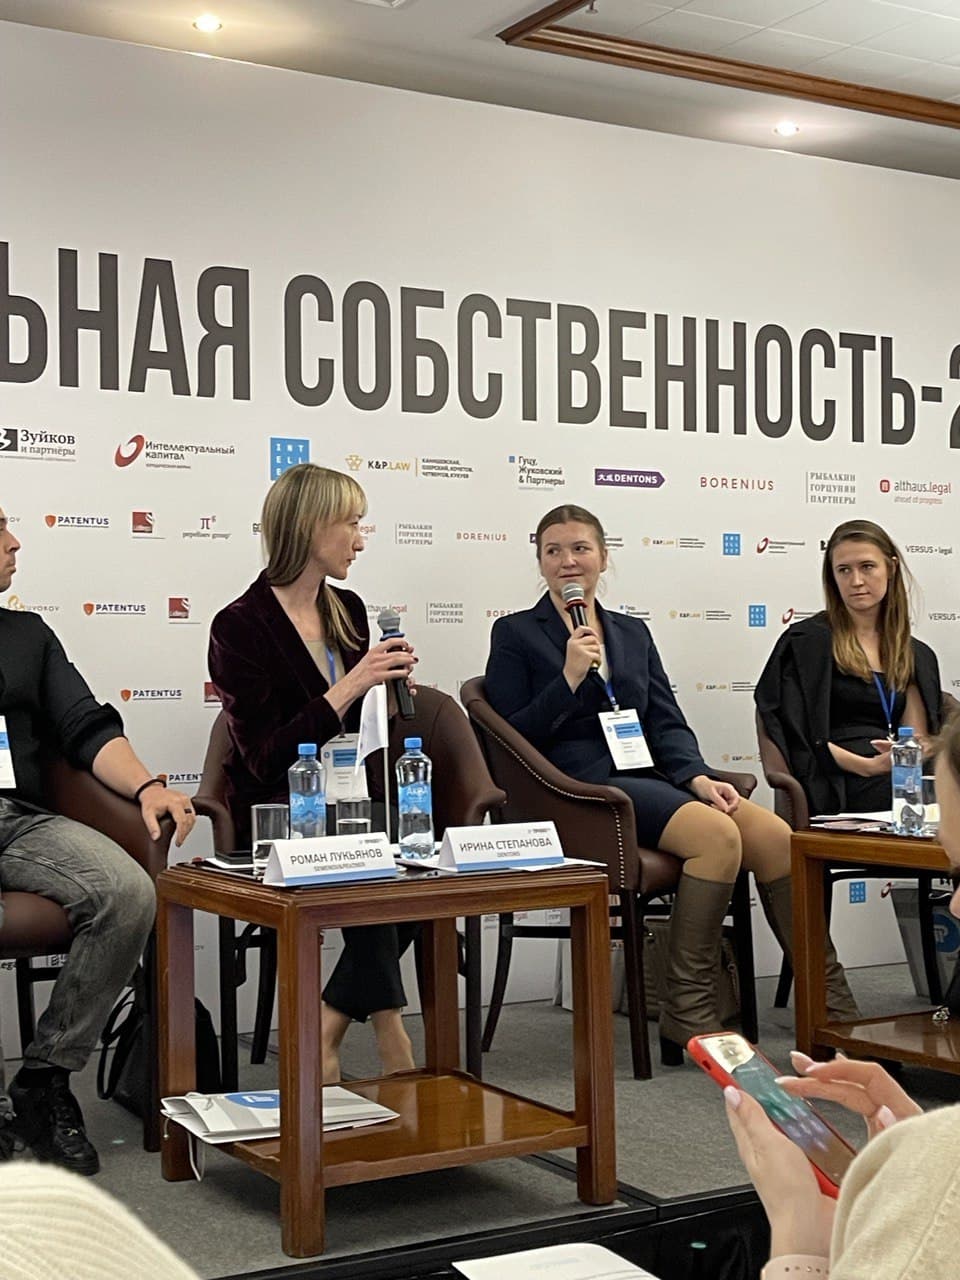 В Москве завершилась конференция Интеллектуальная собственность – 2021